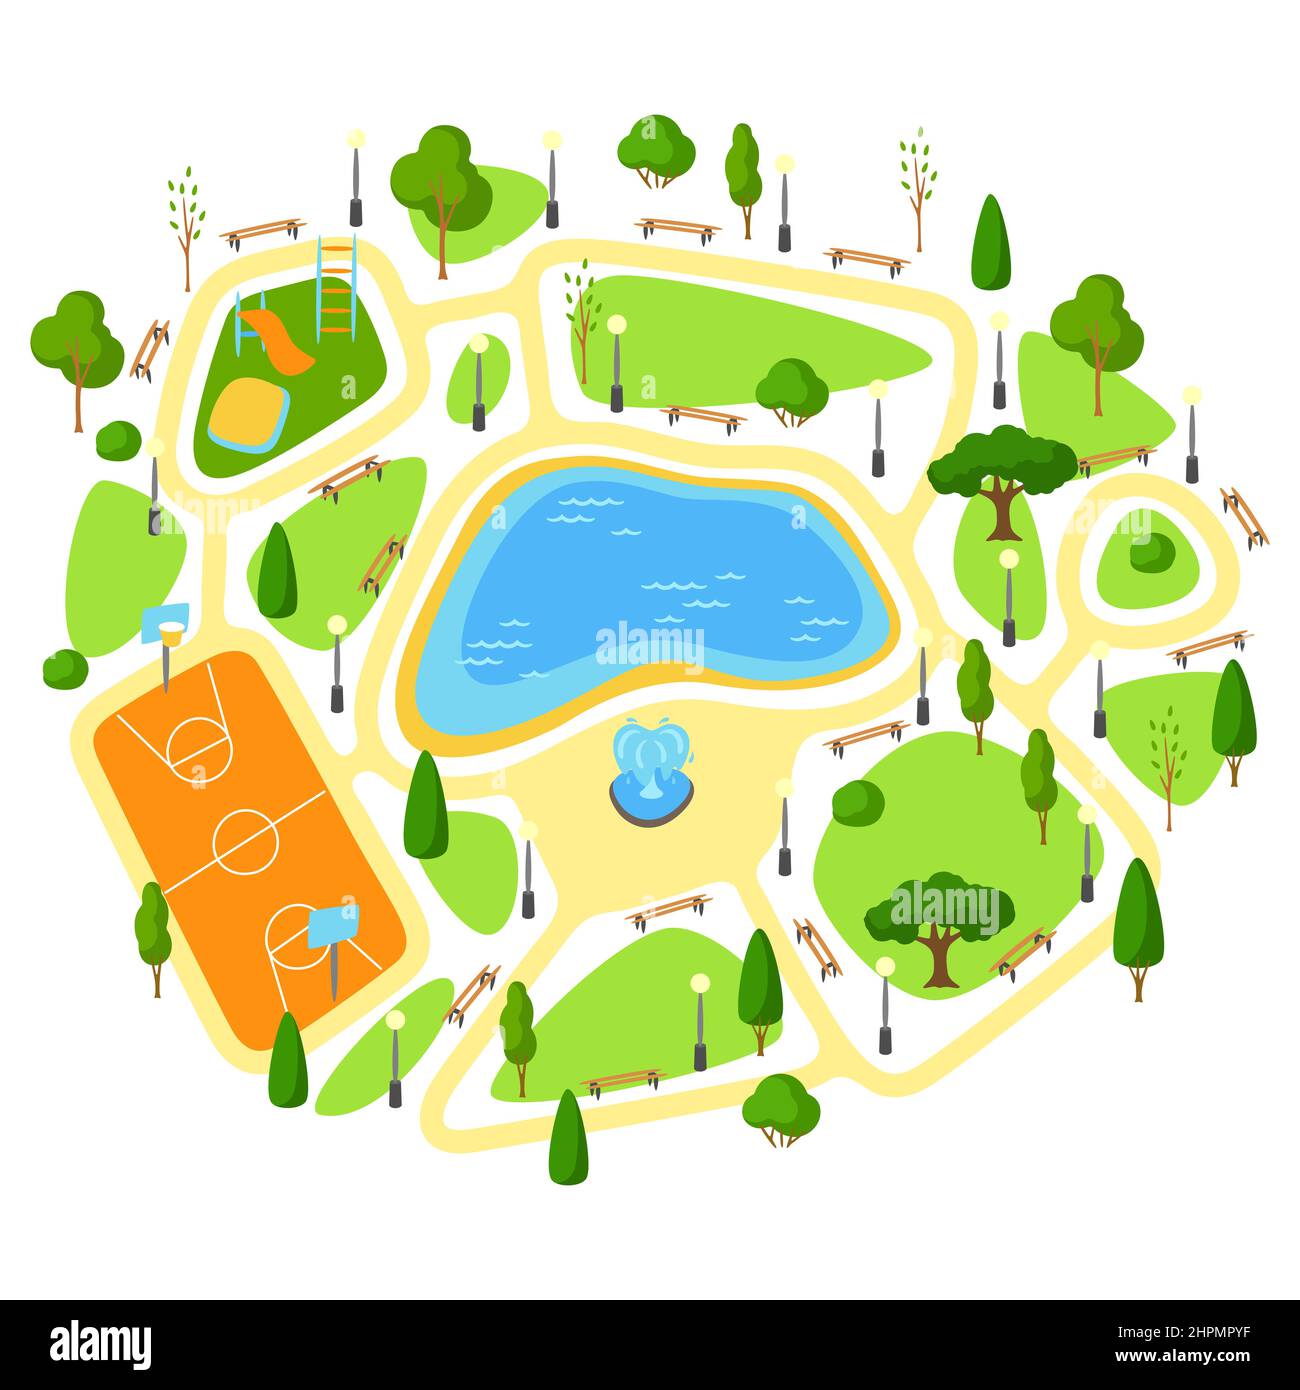 Illustrazione del bellissimo parco estivo o primaverile della città. Spazio urbano pubblico con lago, prato e alberi per passeggiate. Illustrazione Vettoriale